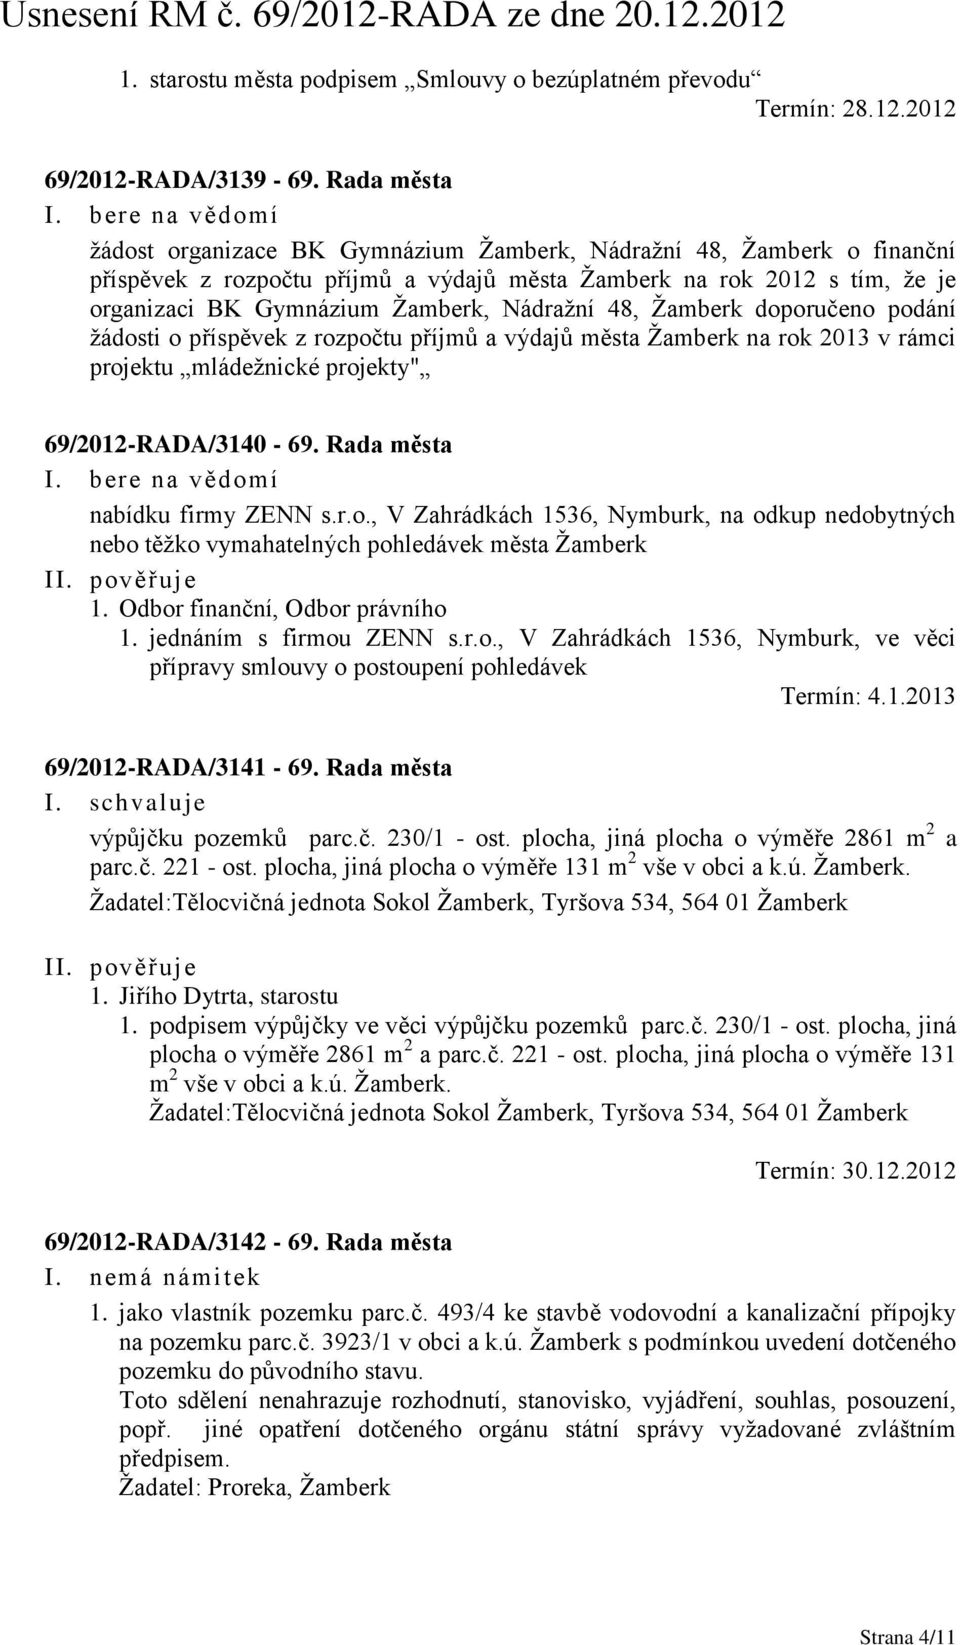 Nádražní 48, Žamberk doporučeno podání žádosti o příspěvek z rozpočtu příjmů a výdajů města Žamberk na rok 2013 v rámci projektu mládežnické projekty" 69/2012-RADA/3140-69.